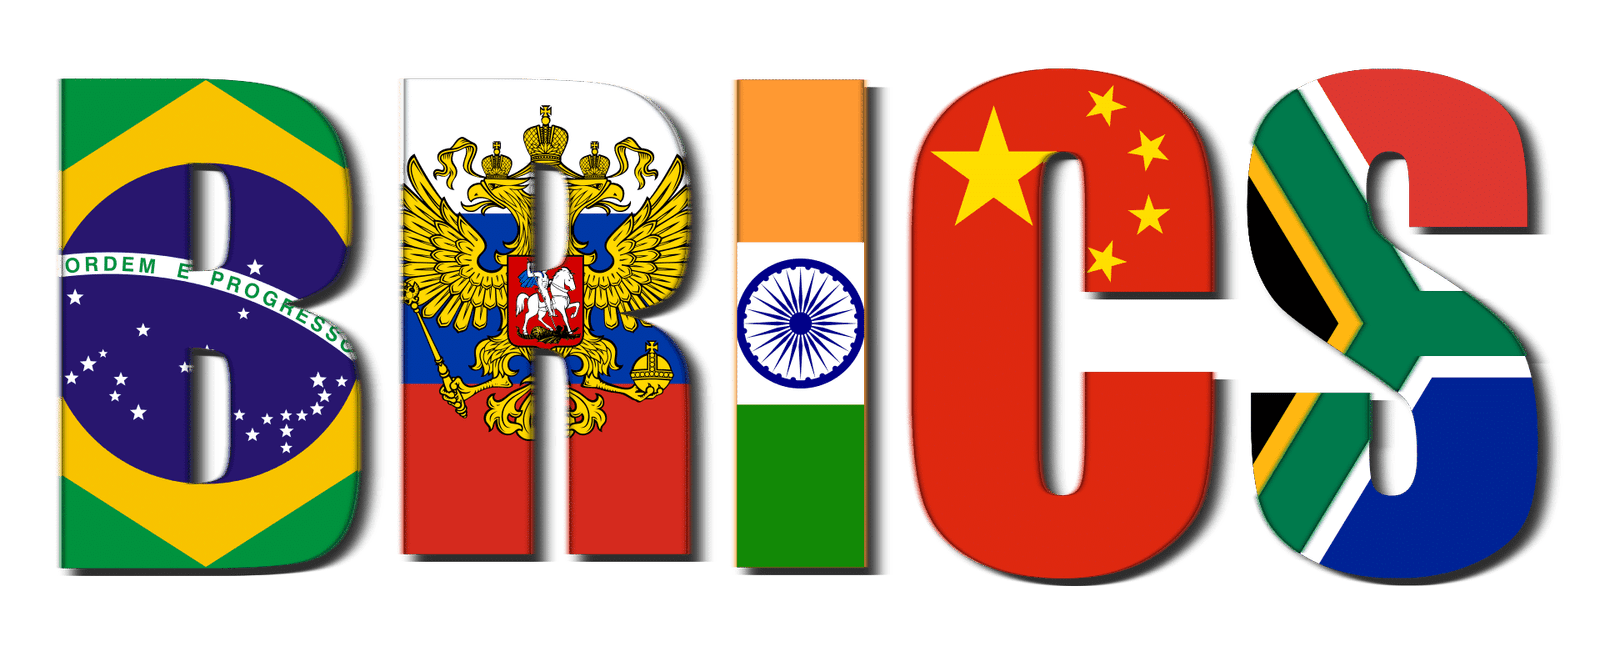 BRICS Logo